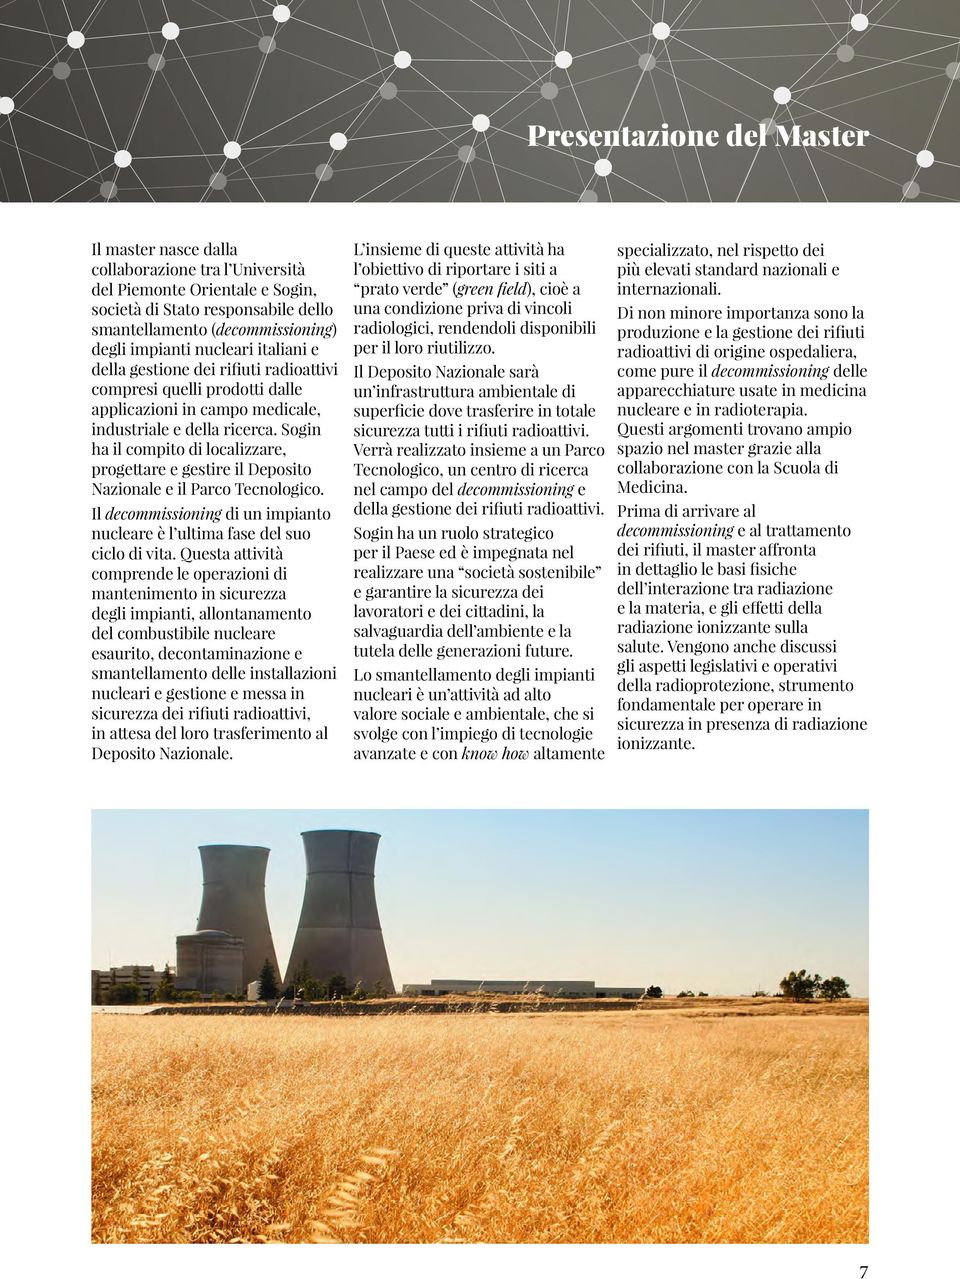 Sogin ha il compito di localizzare, progettare e gestire il Deposito Nazionale e il Parco Tecnologico. Il decommissioning di un impianto nucleare è l ultima fase del suo ciclo di vita.